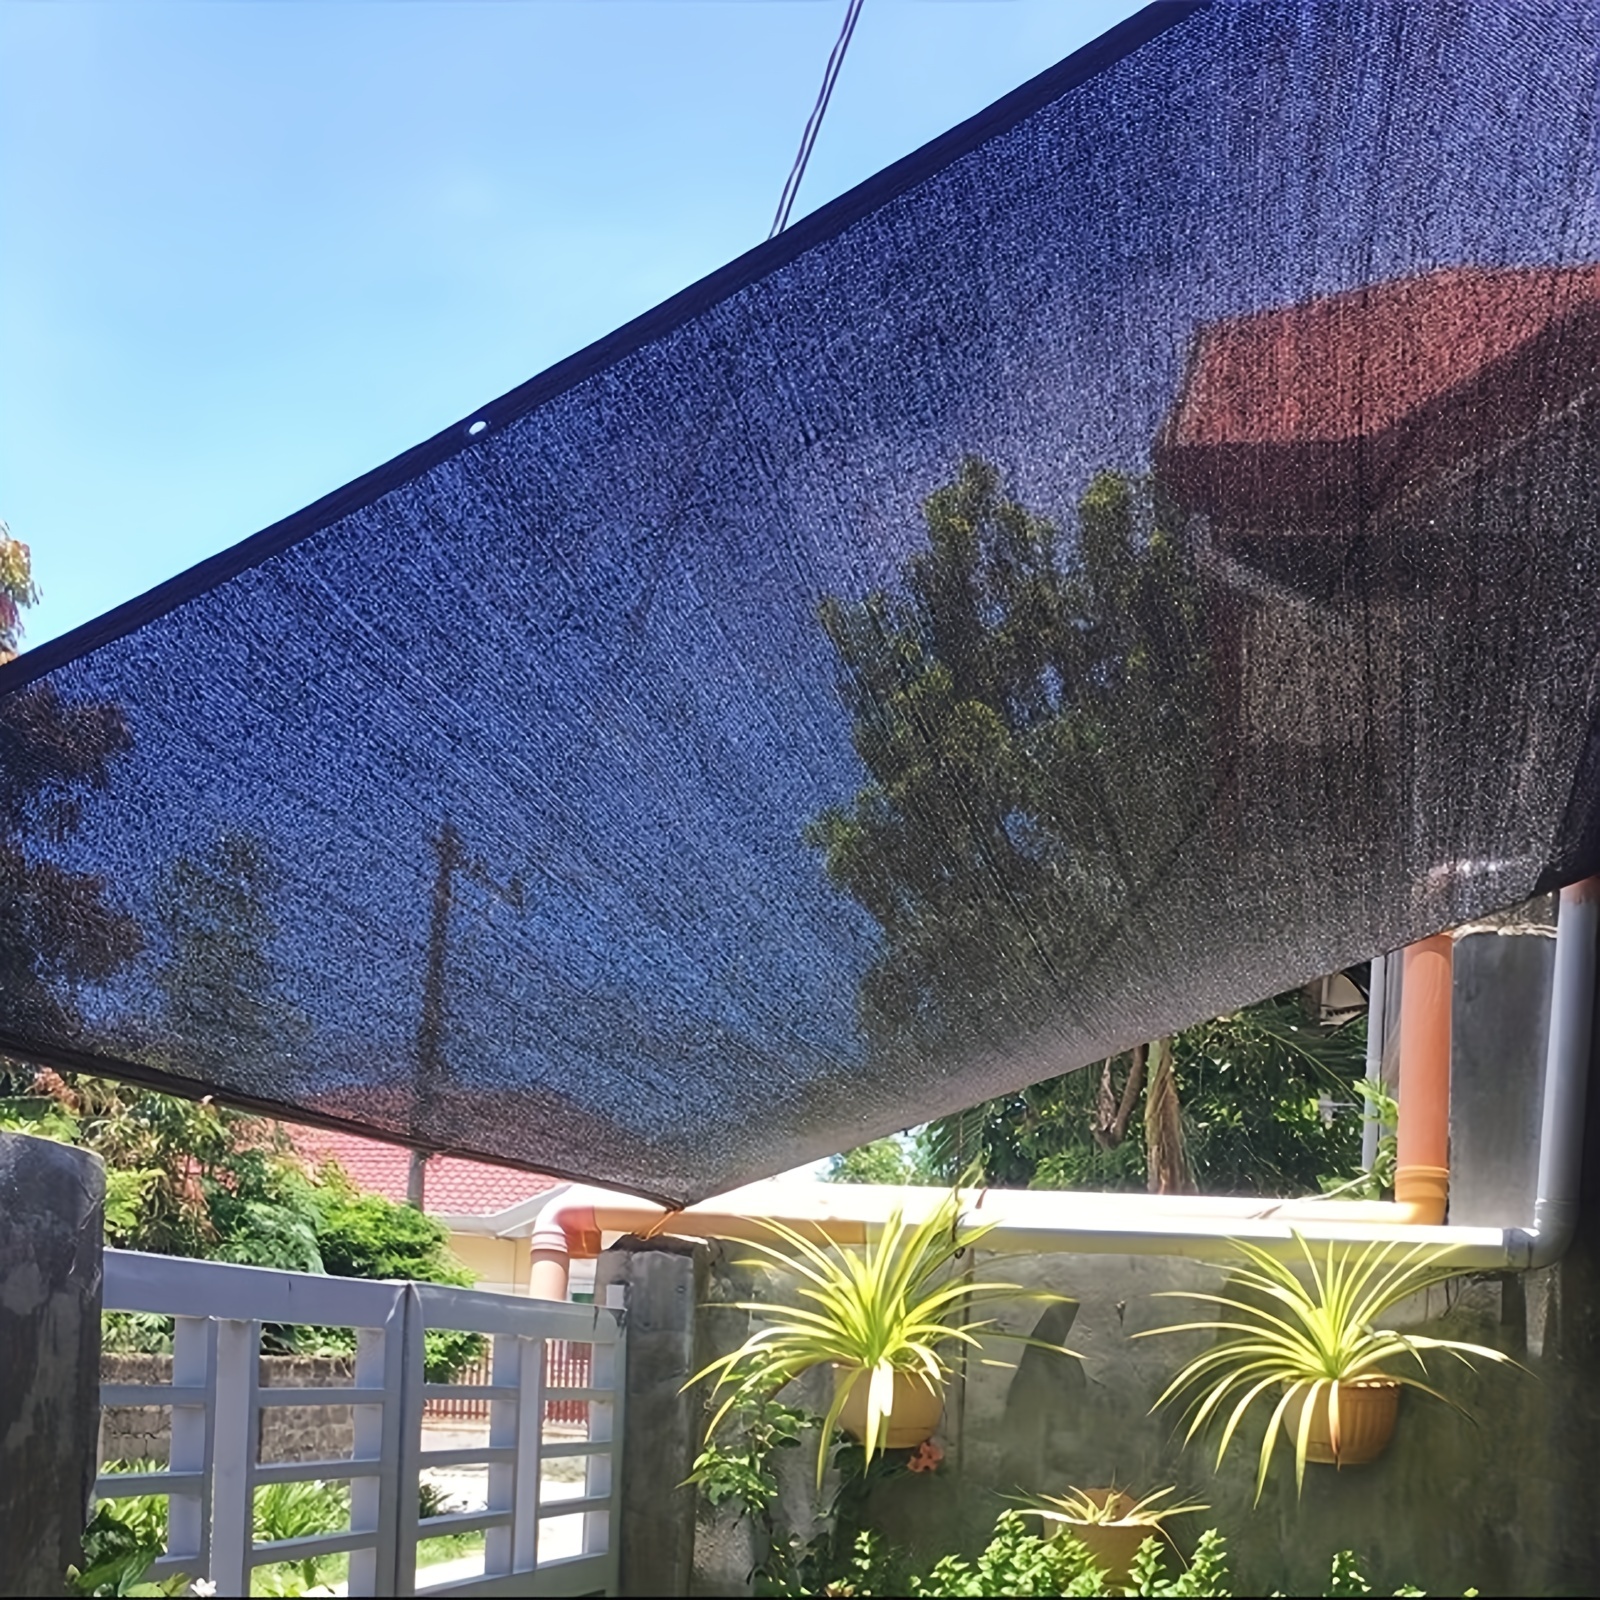 Sonnensegel Rechteckig 3x4m Blau mit Ösen für Balkon Terrasse  Sonnenschutzsegel